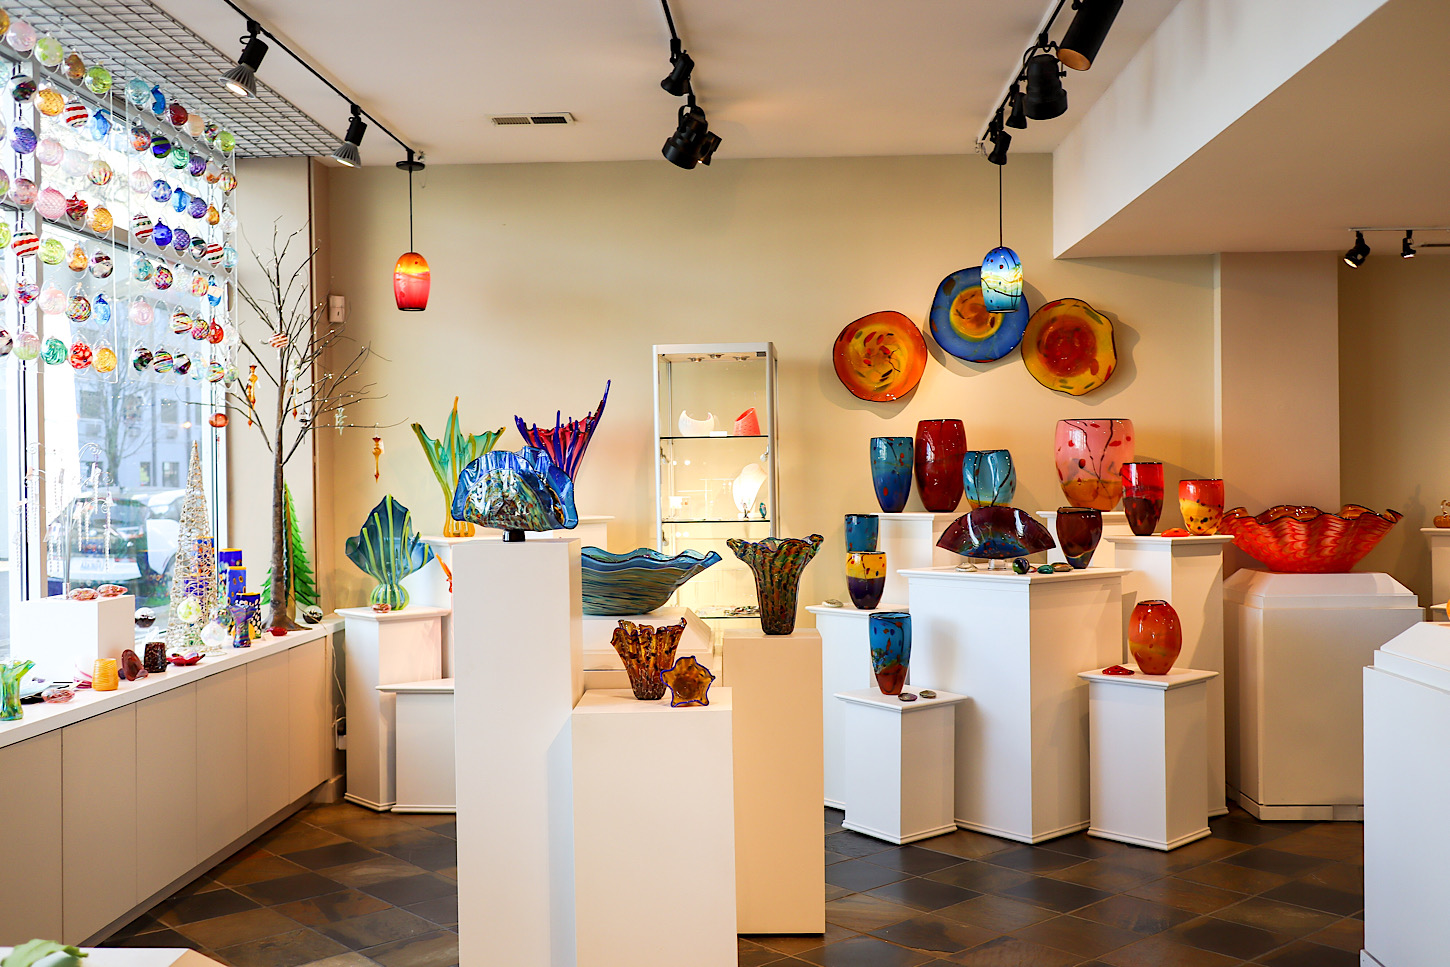 Seattle Glassblowing Studio & Gallery